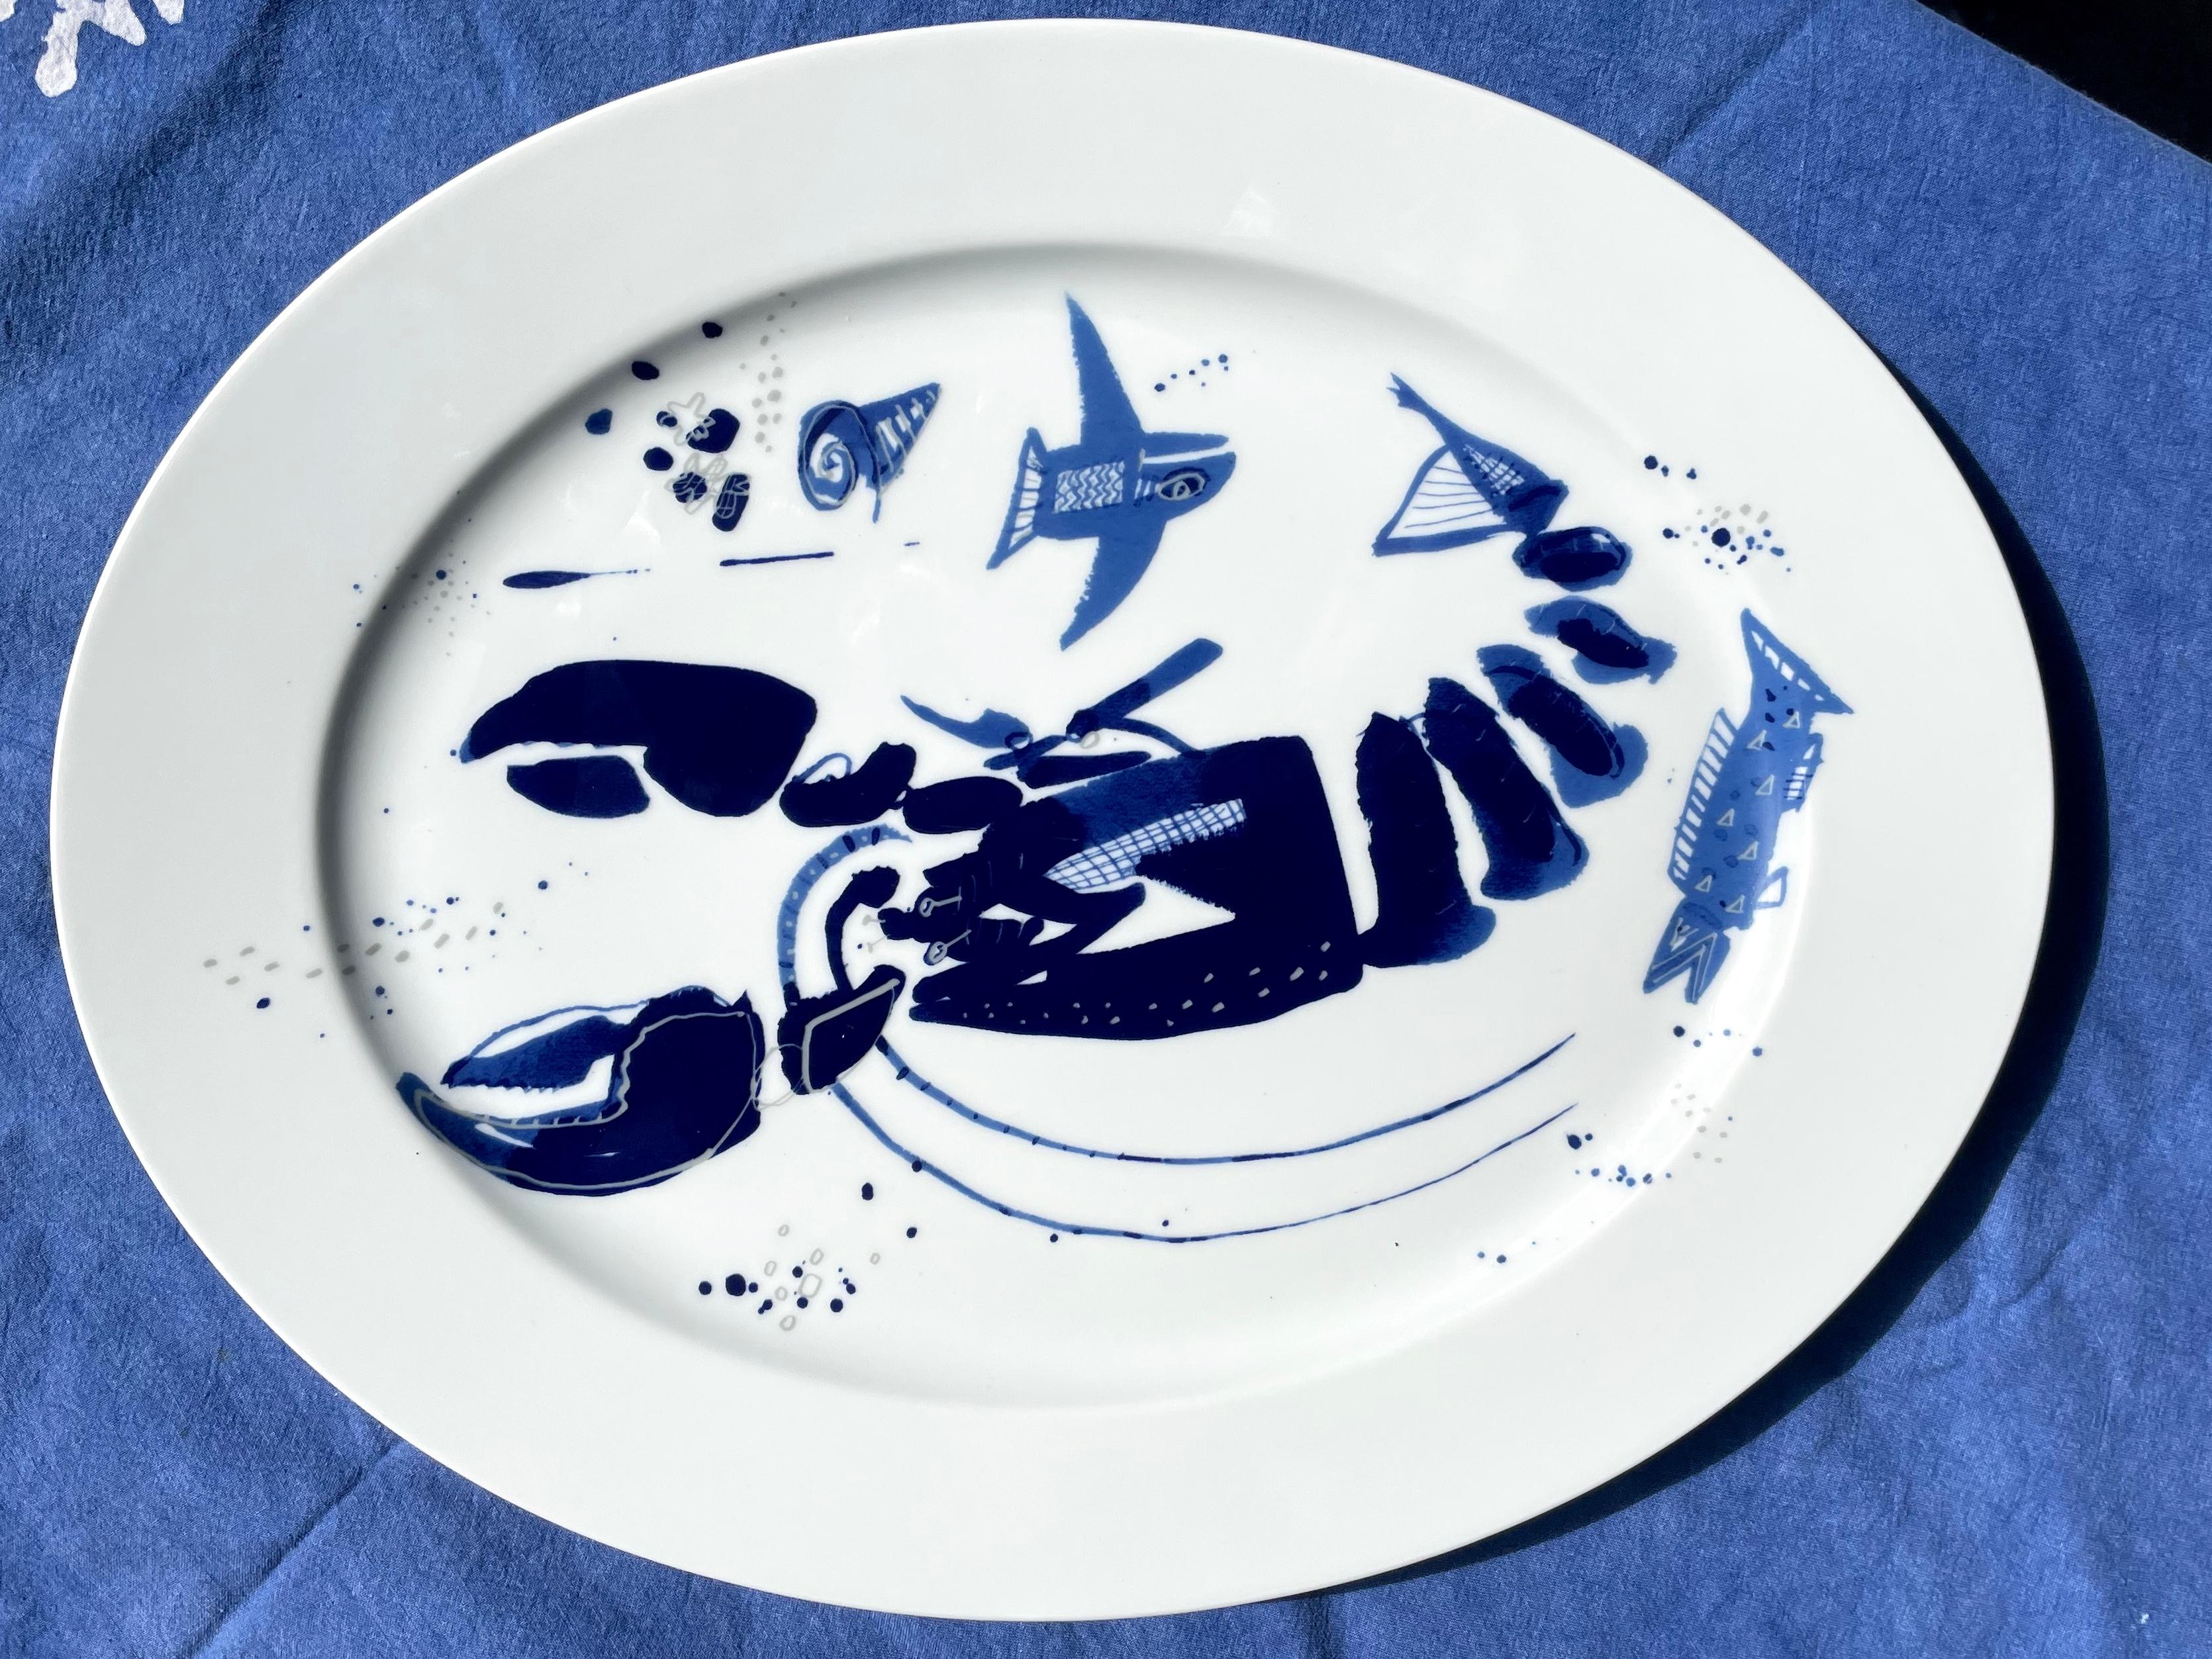 Plateau de homard bleu et blanc. Plat ovale en porcelaine avec un motif de homard en bleu cobalt sur fond blanc, avec une touche vintage des années 50. Allemagne, 21ème siècle.
Dimensions : 14.5